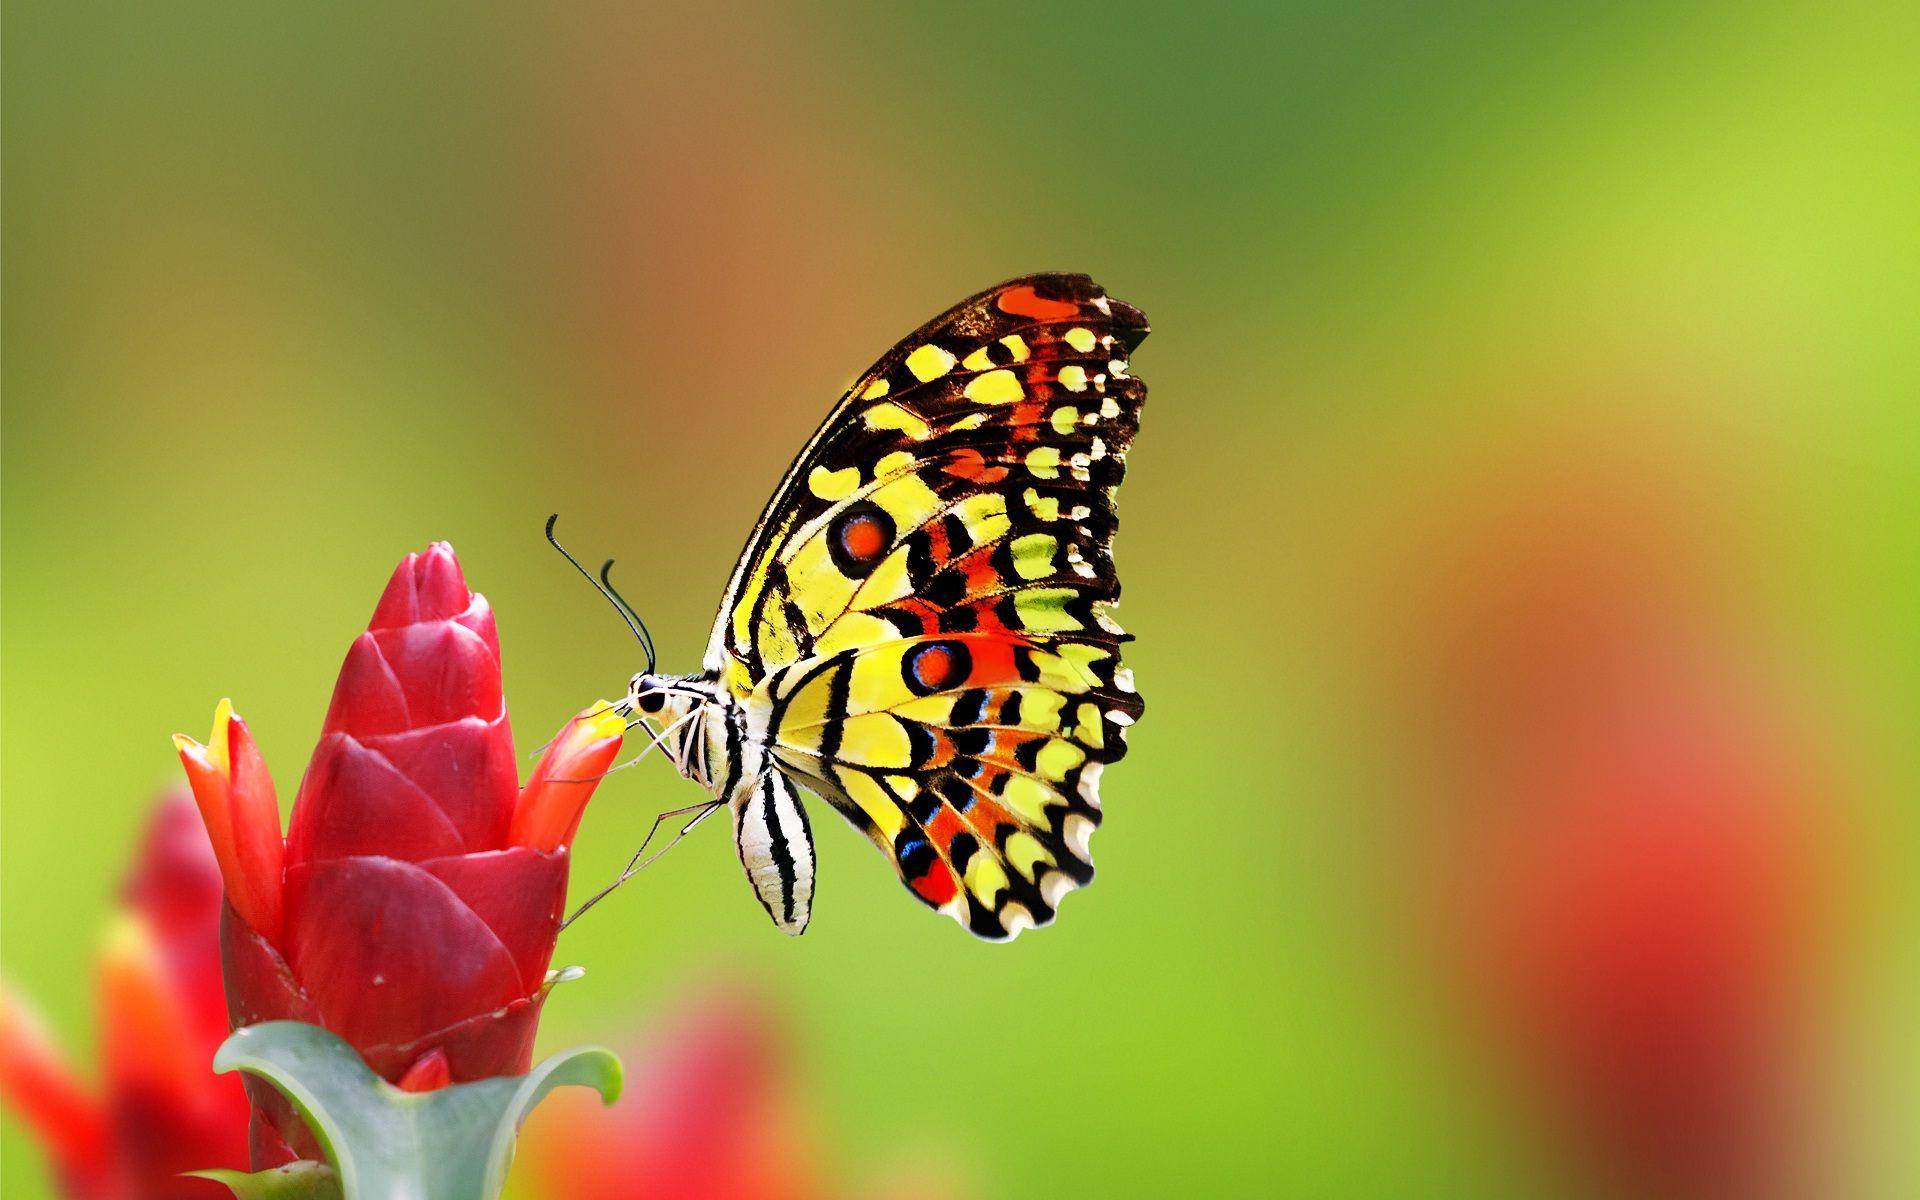 Most beautiful butterfly desktop background wallpaper. HD